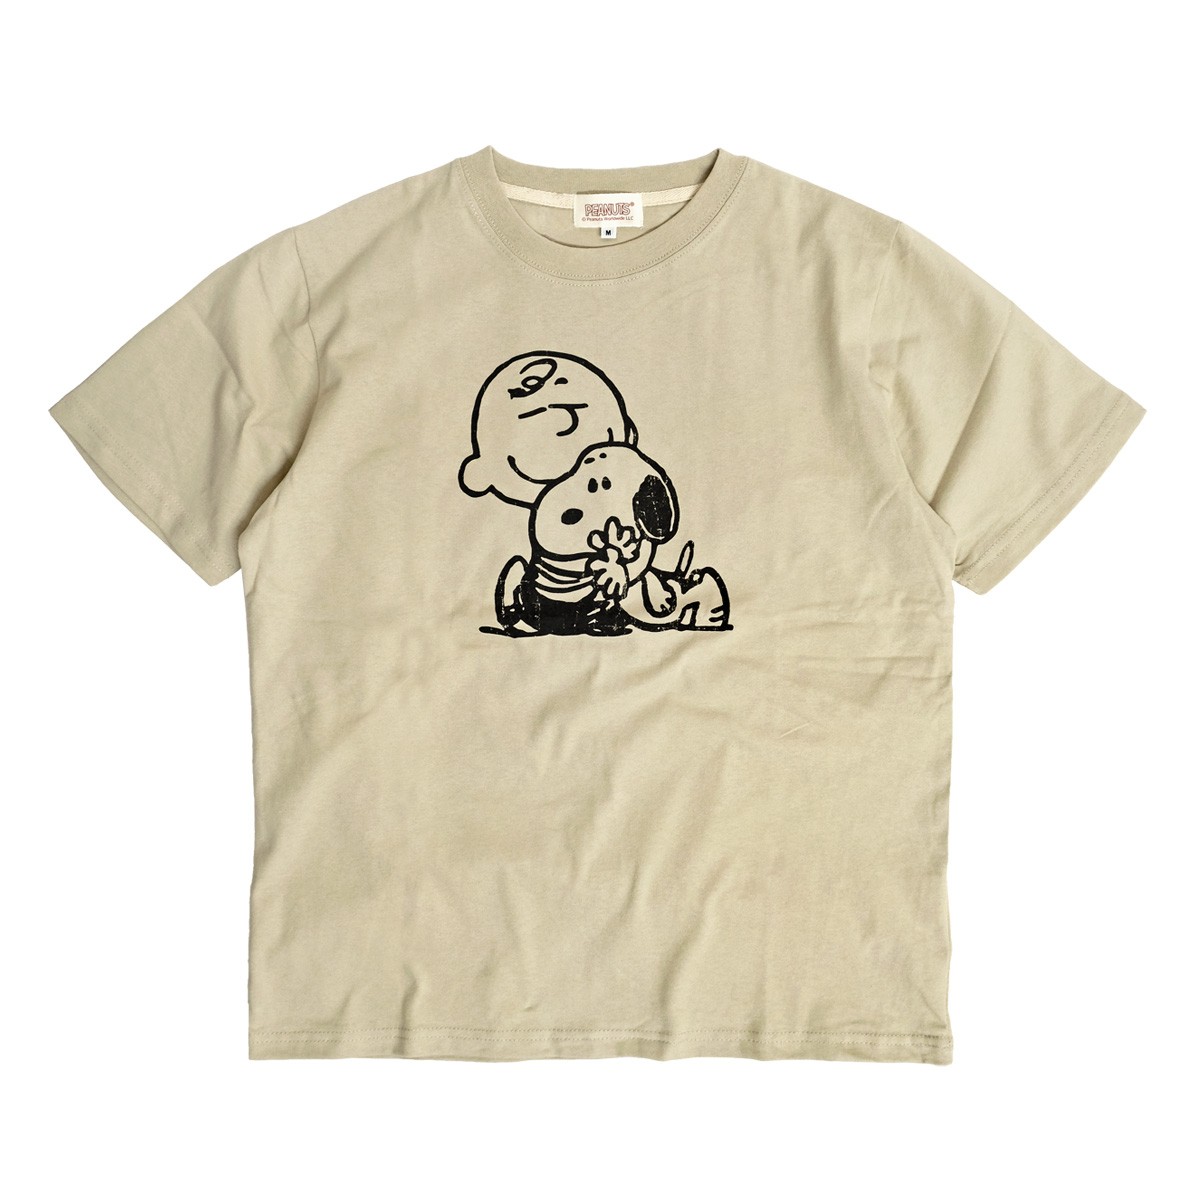 スヌーピー Tシャツ チャーリーブラウン プリント 半袖tシャツ Peanuts Snoopy キャラクターtシャツ ユニセックス Tss 416 Tss 416 Renovatio 通販 Yahoo ショッピング